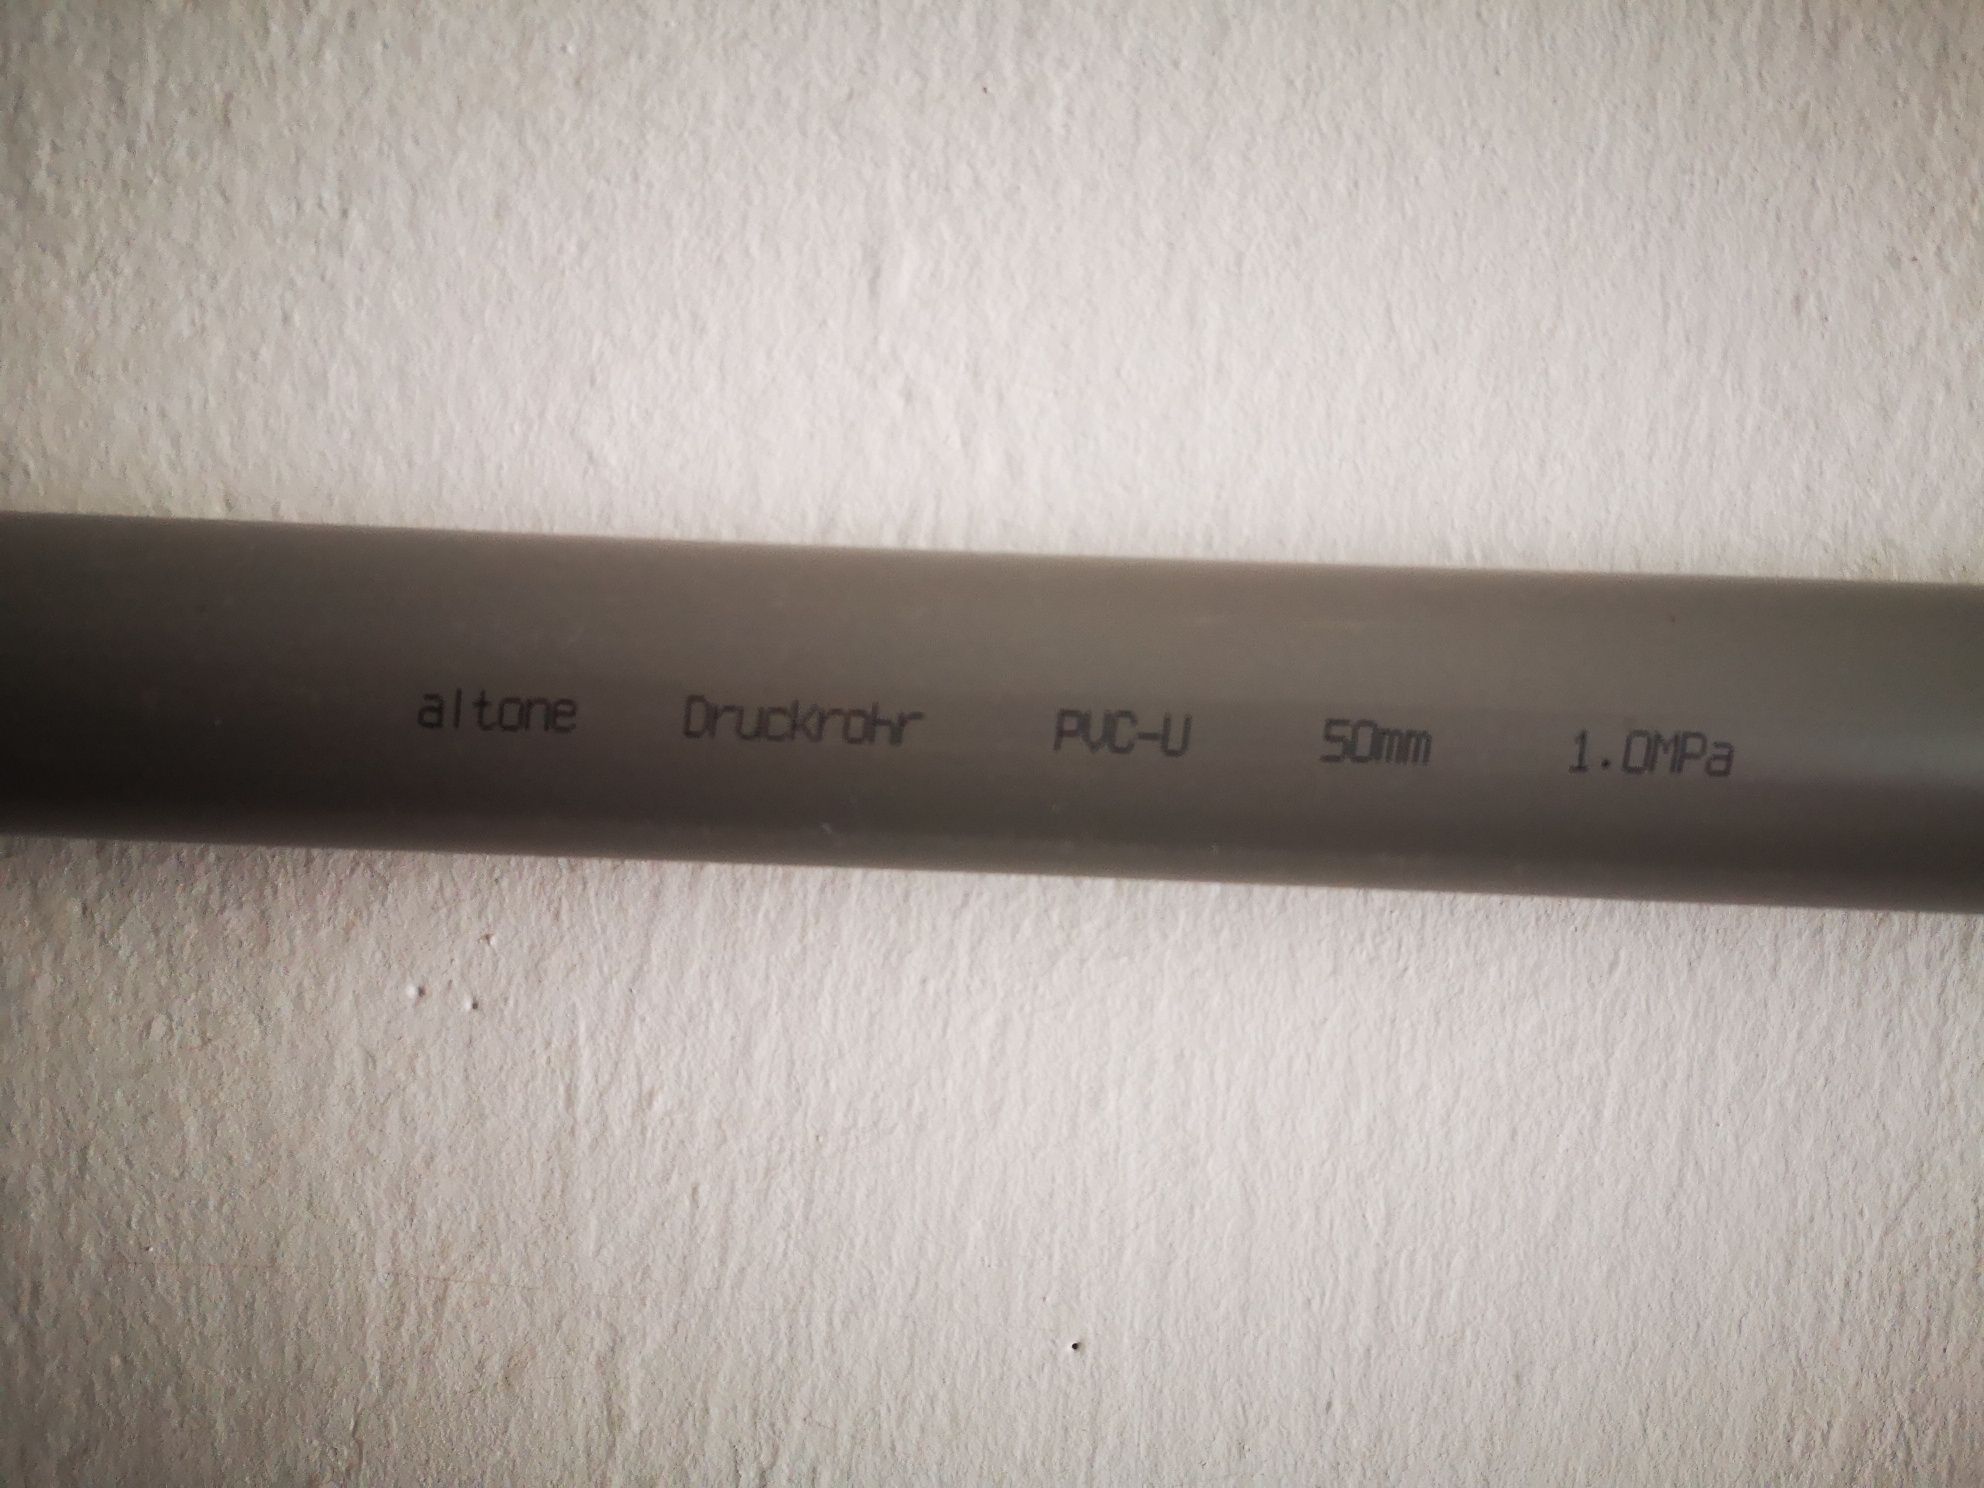 Rury PVC-U 50mm 1 MPa